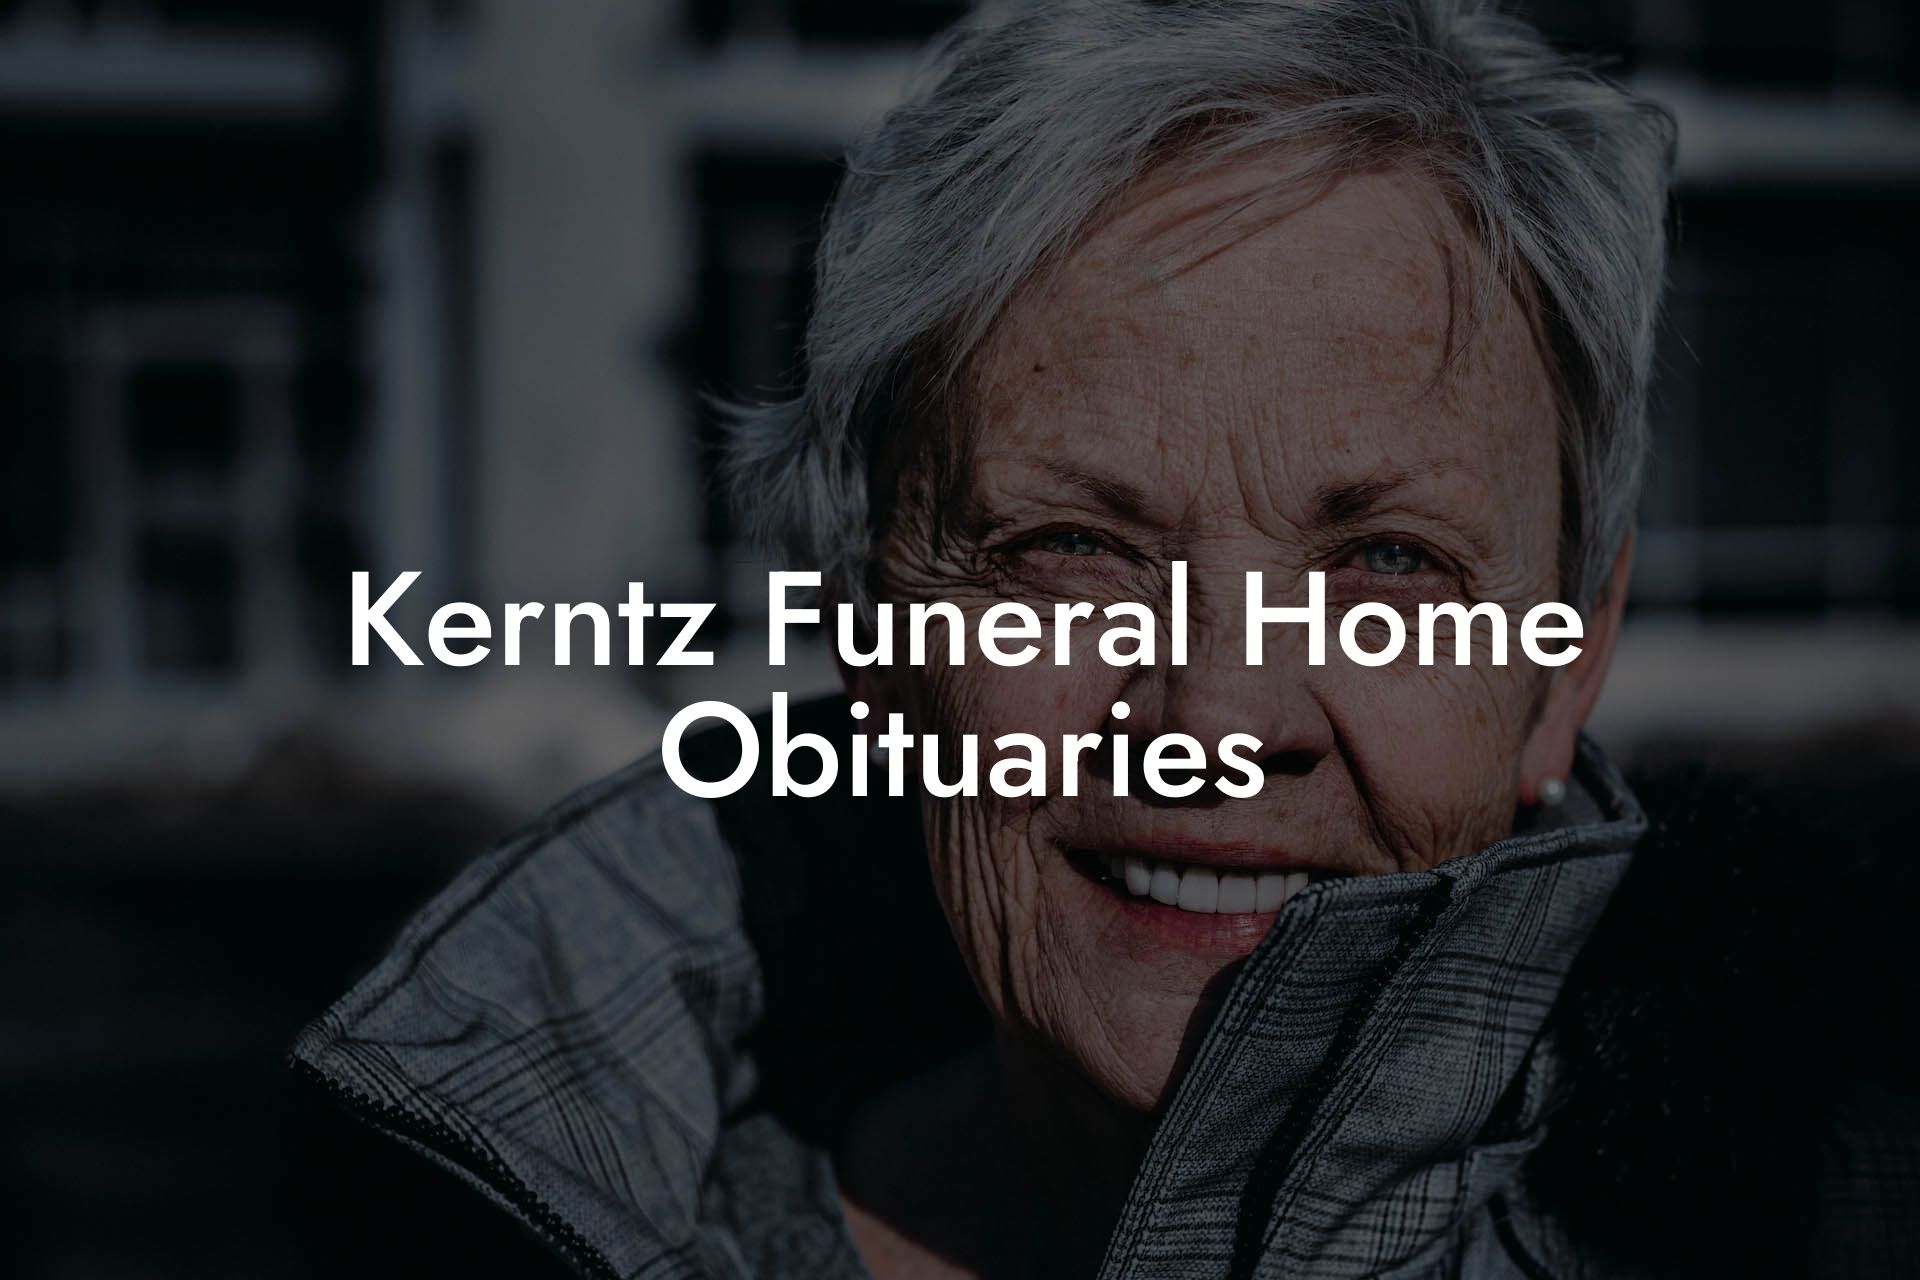 Kerntz Funeral Home Obituaries